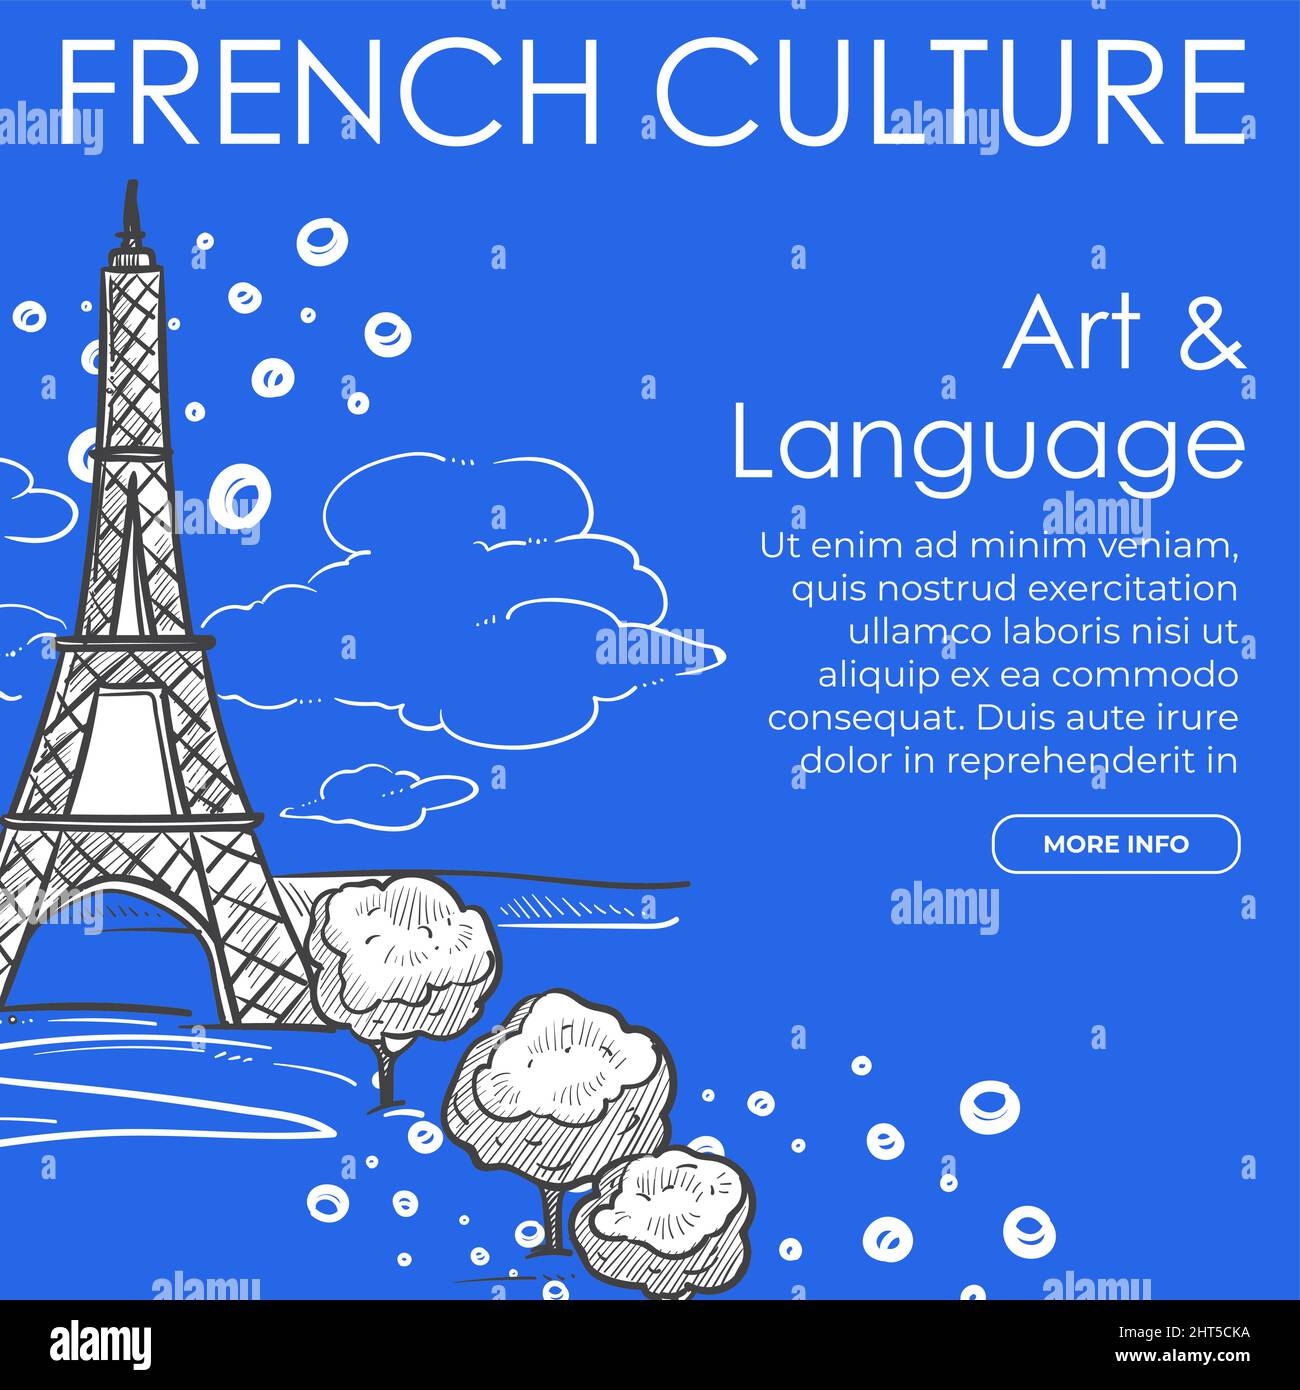 Pagina web della cultura, dell'arte e della lingua francese Illustrazione Vettoriale